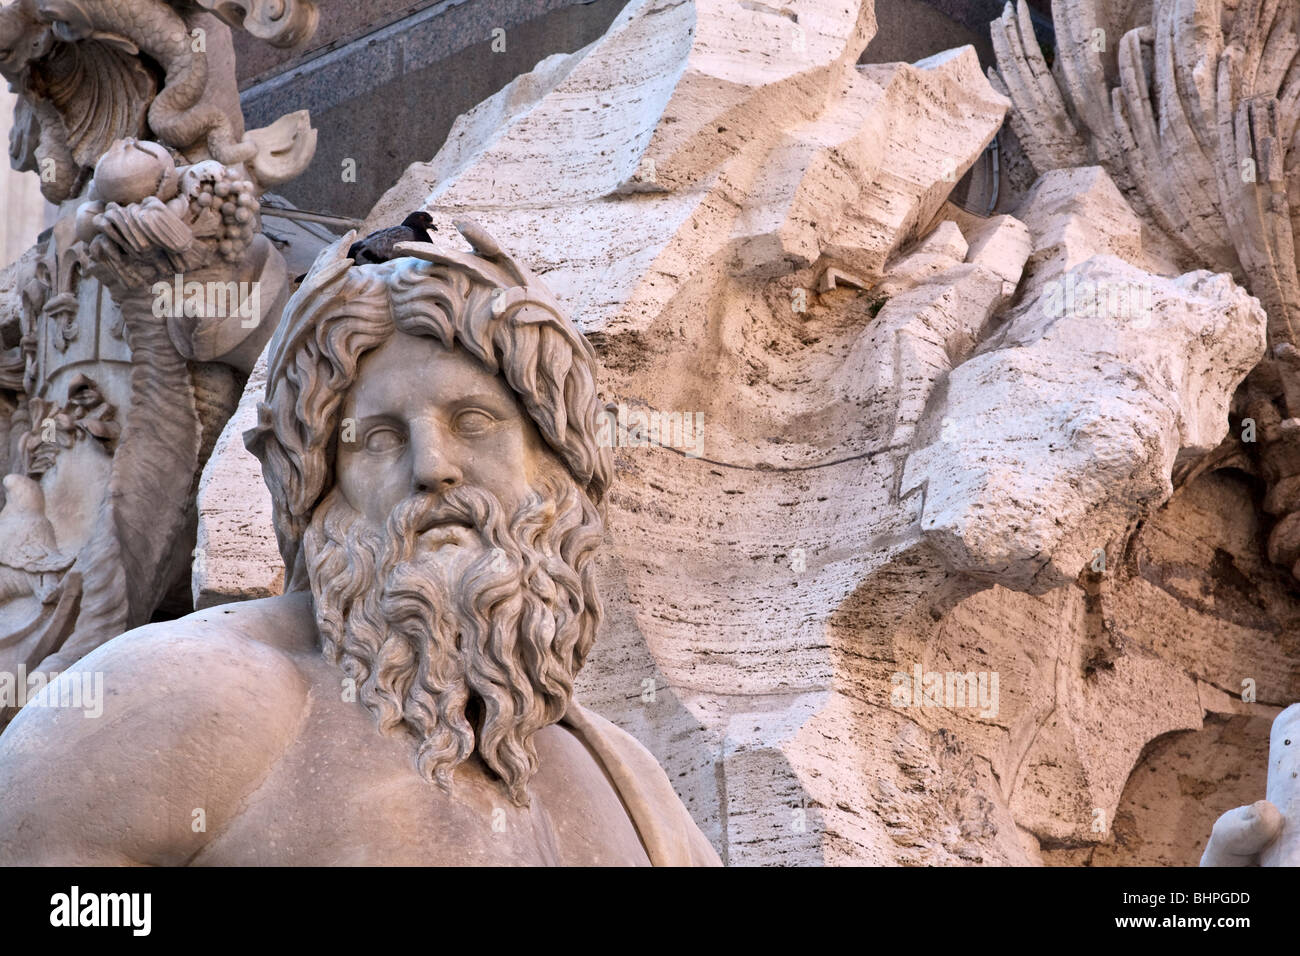 Dettaglio del 'Quattro fiumi' Quattro Fiumi della fontana dall'artista italiano Bernini situato in Piazza Navona. Roma, Italia Foto Stock